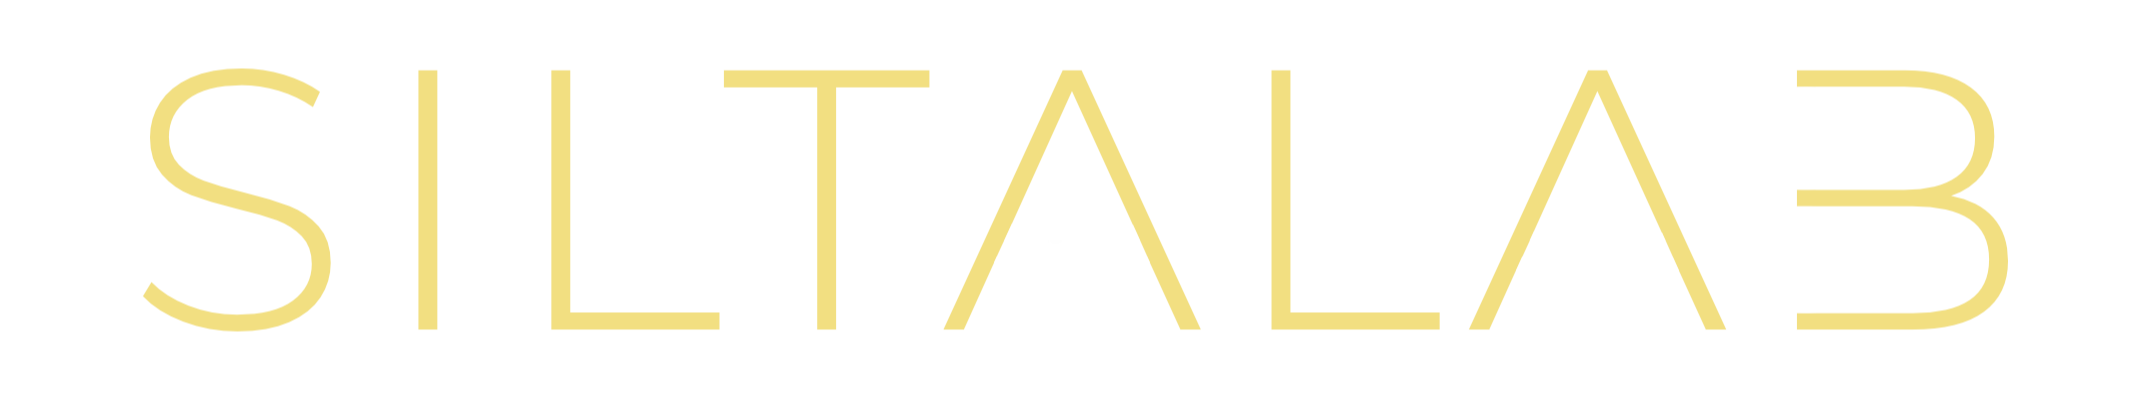 SILTALAB-logo